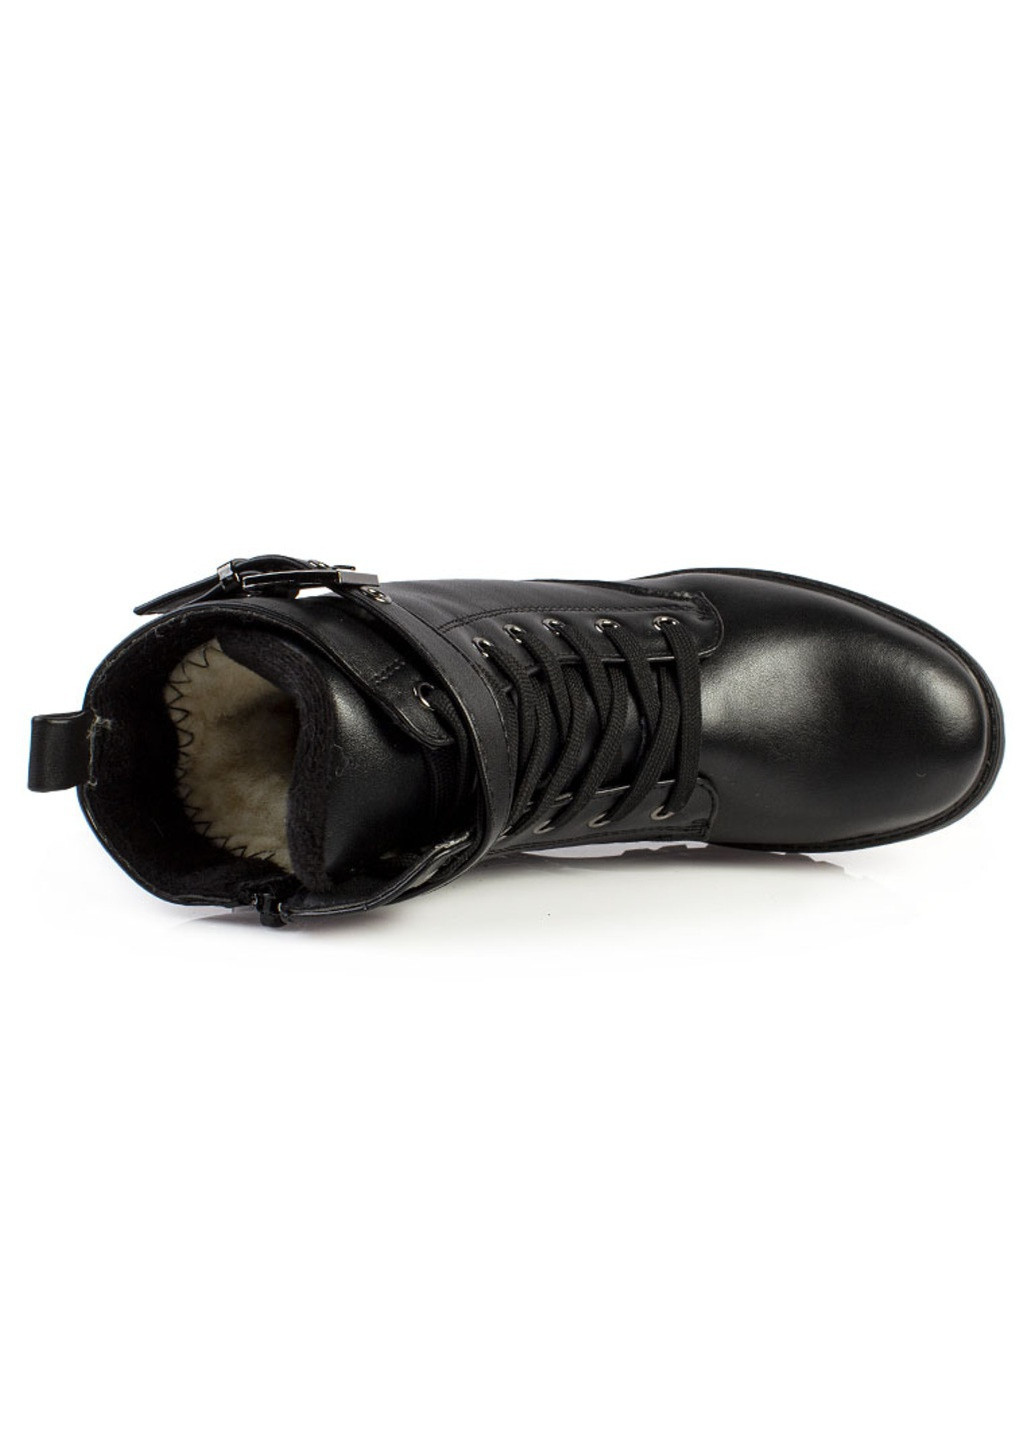 Черные повседневные зимние ботинки подростковые для девочек бренда 6500020_(1) Weestep